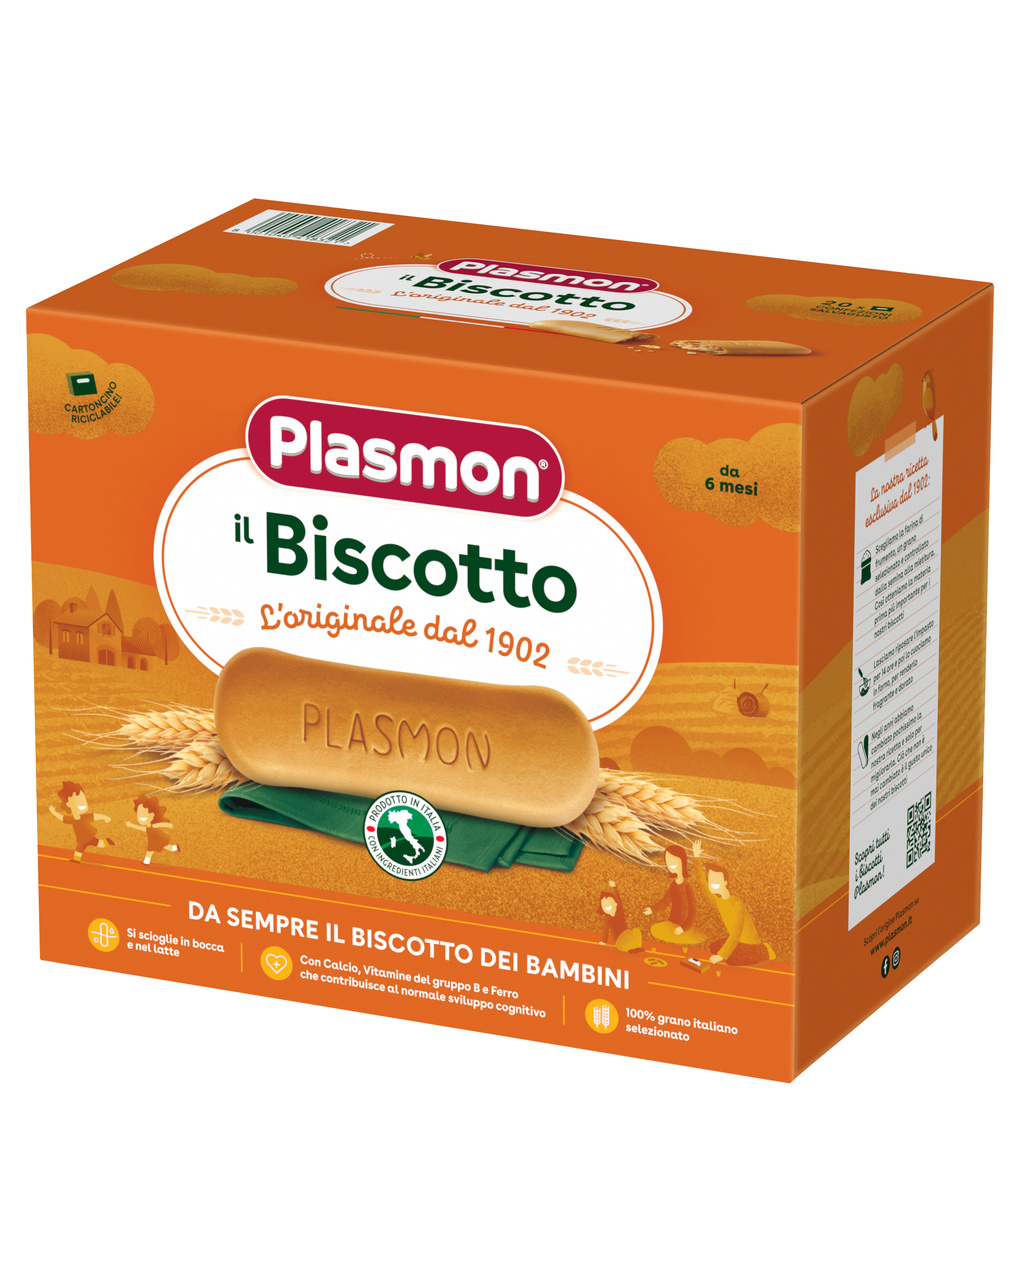 Plasmon – biscotto plasmon 1200g